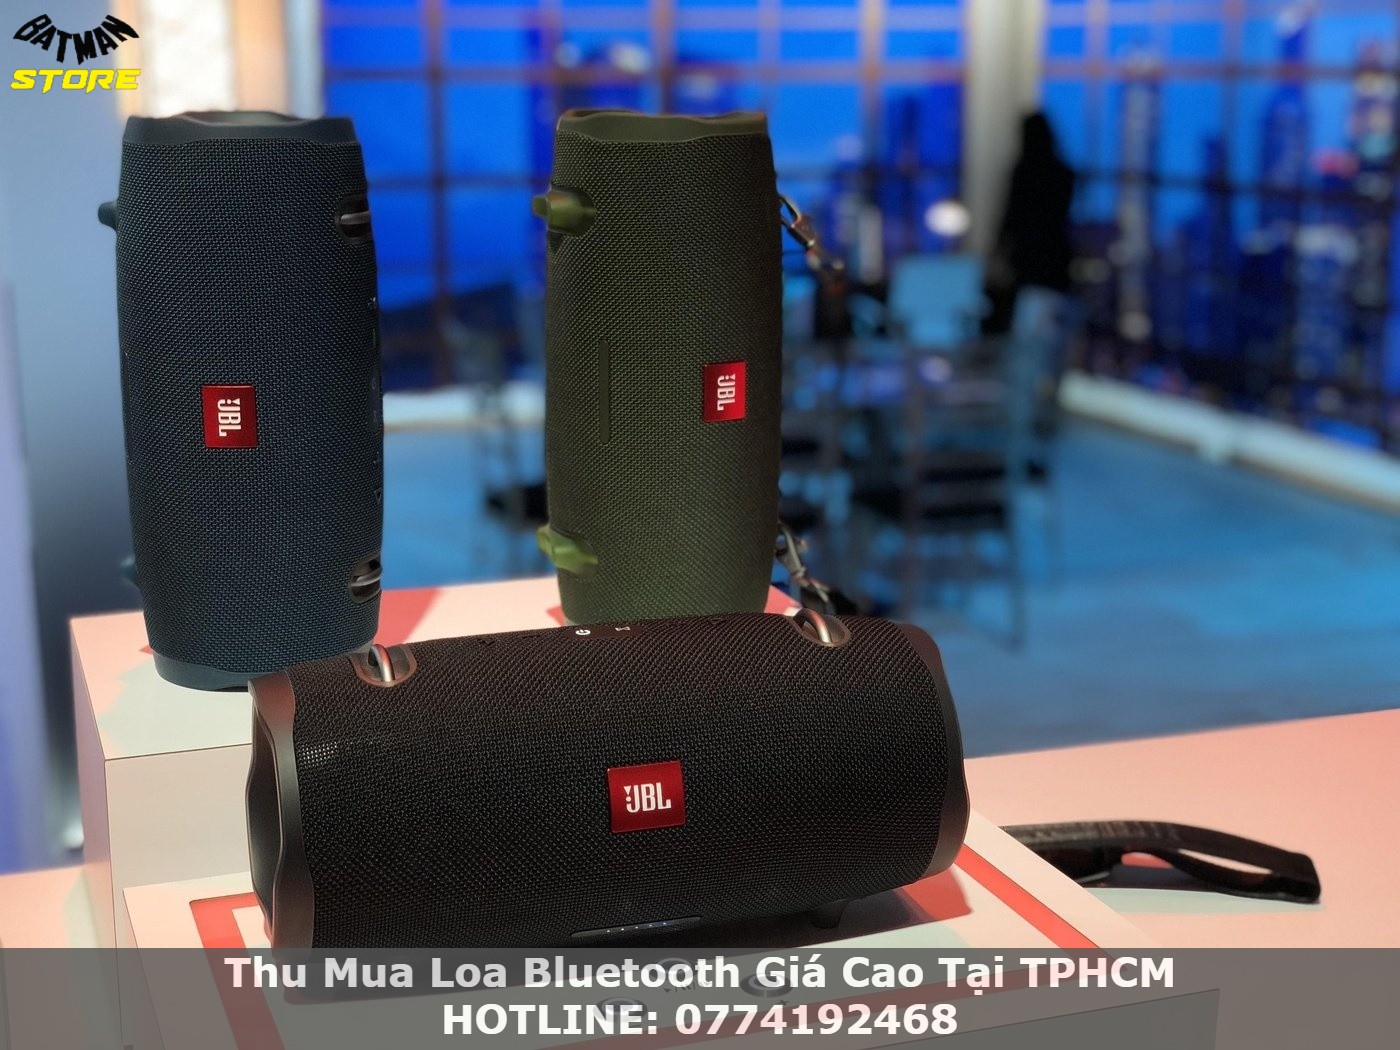 Thu Mua Loa Bluetooth Giá Cao Tại TPHCM